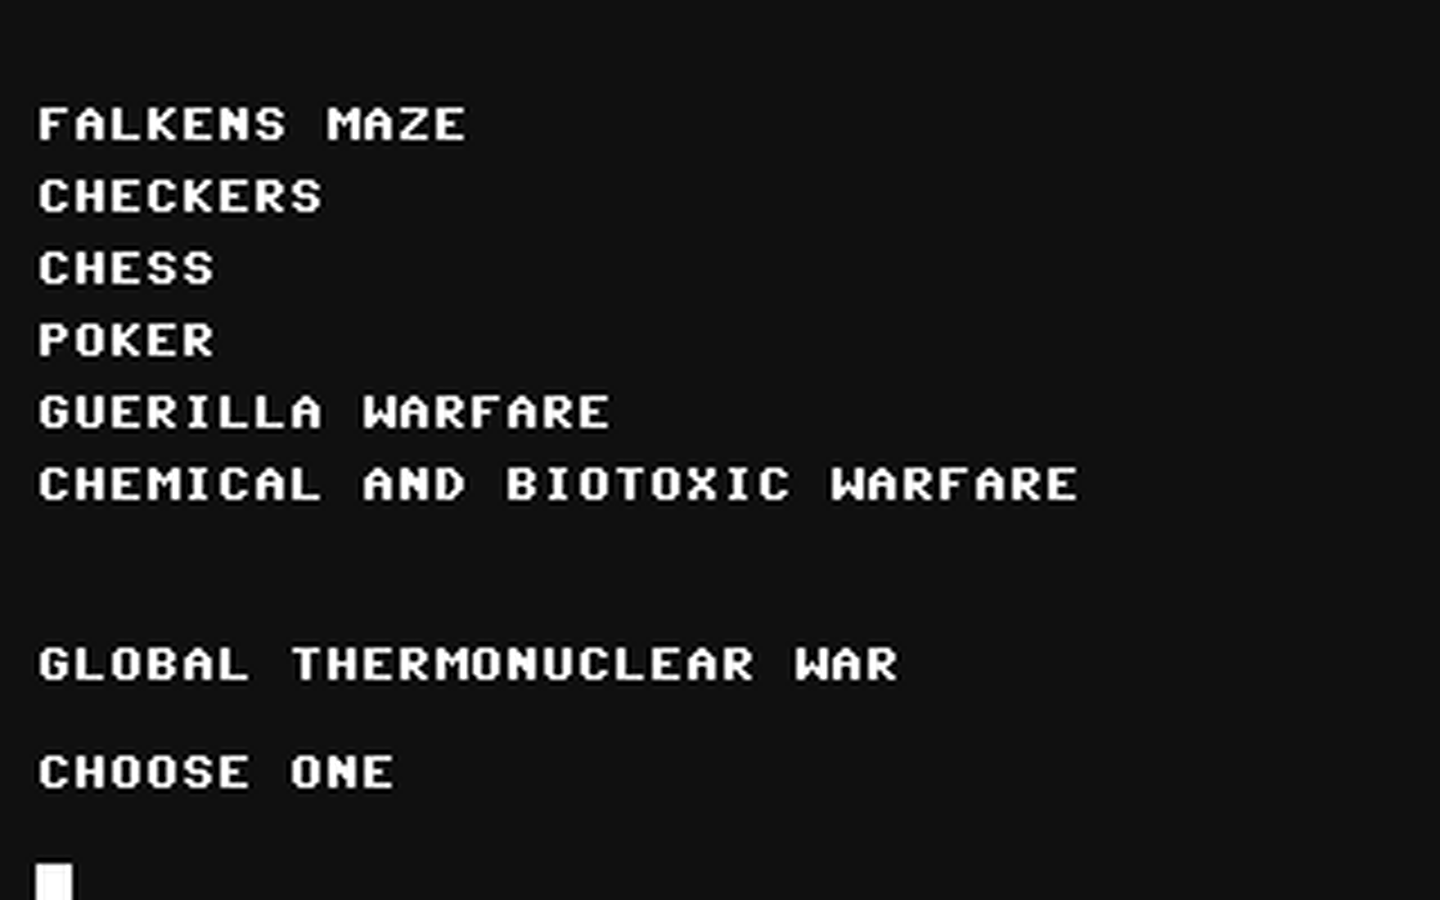 C64 GameBase War_Games_v2.2 (Not_Published) 1984